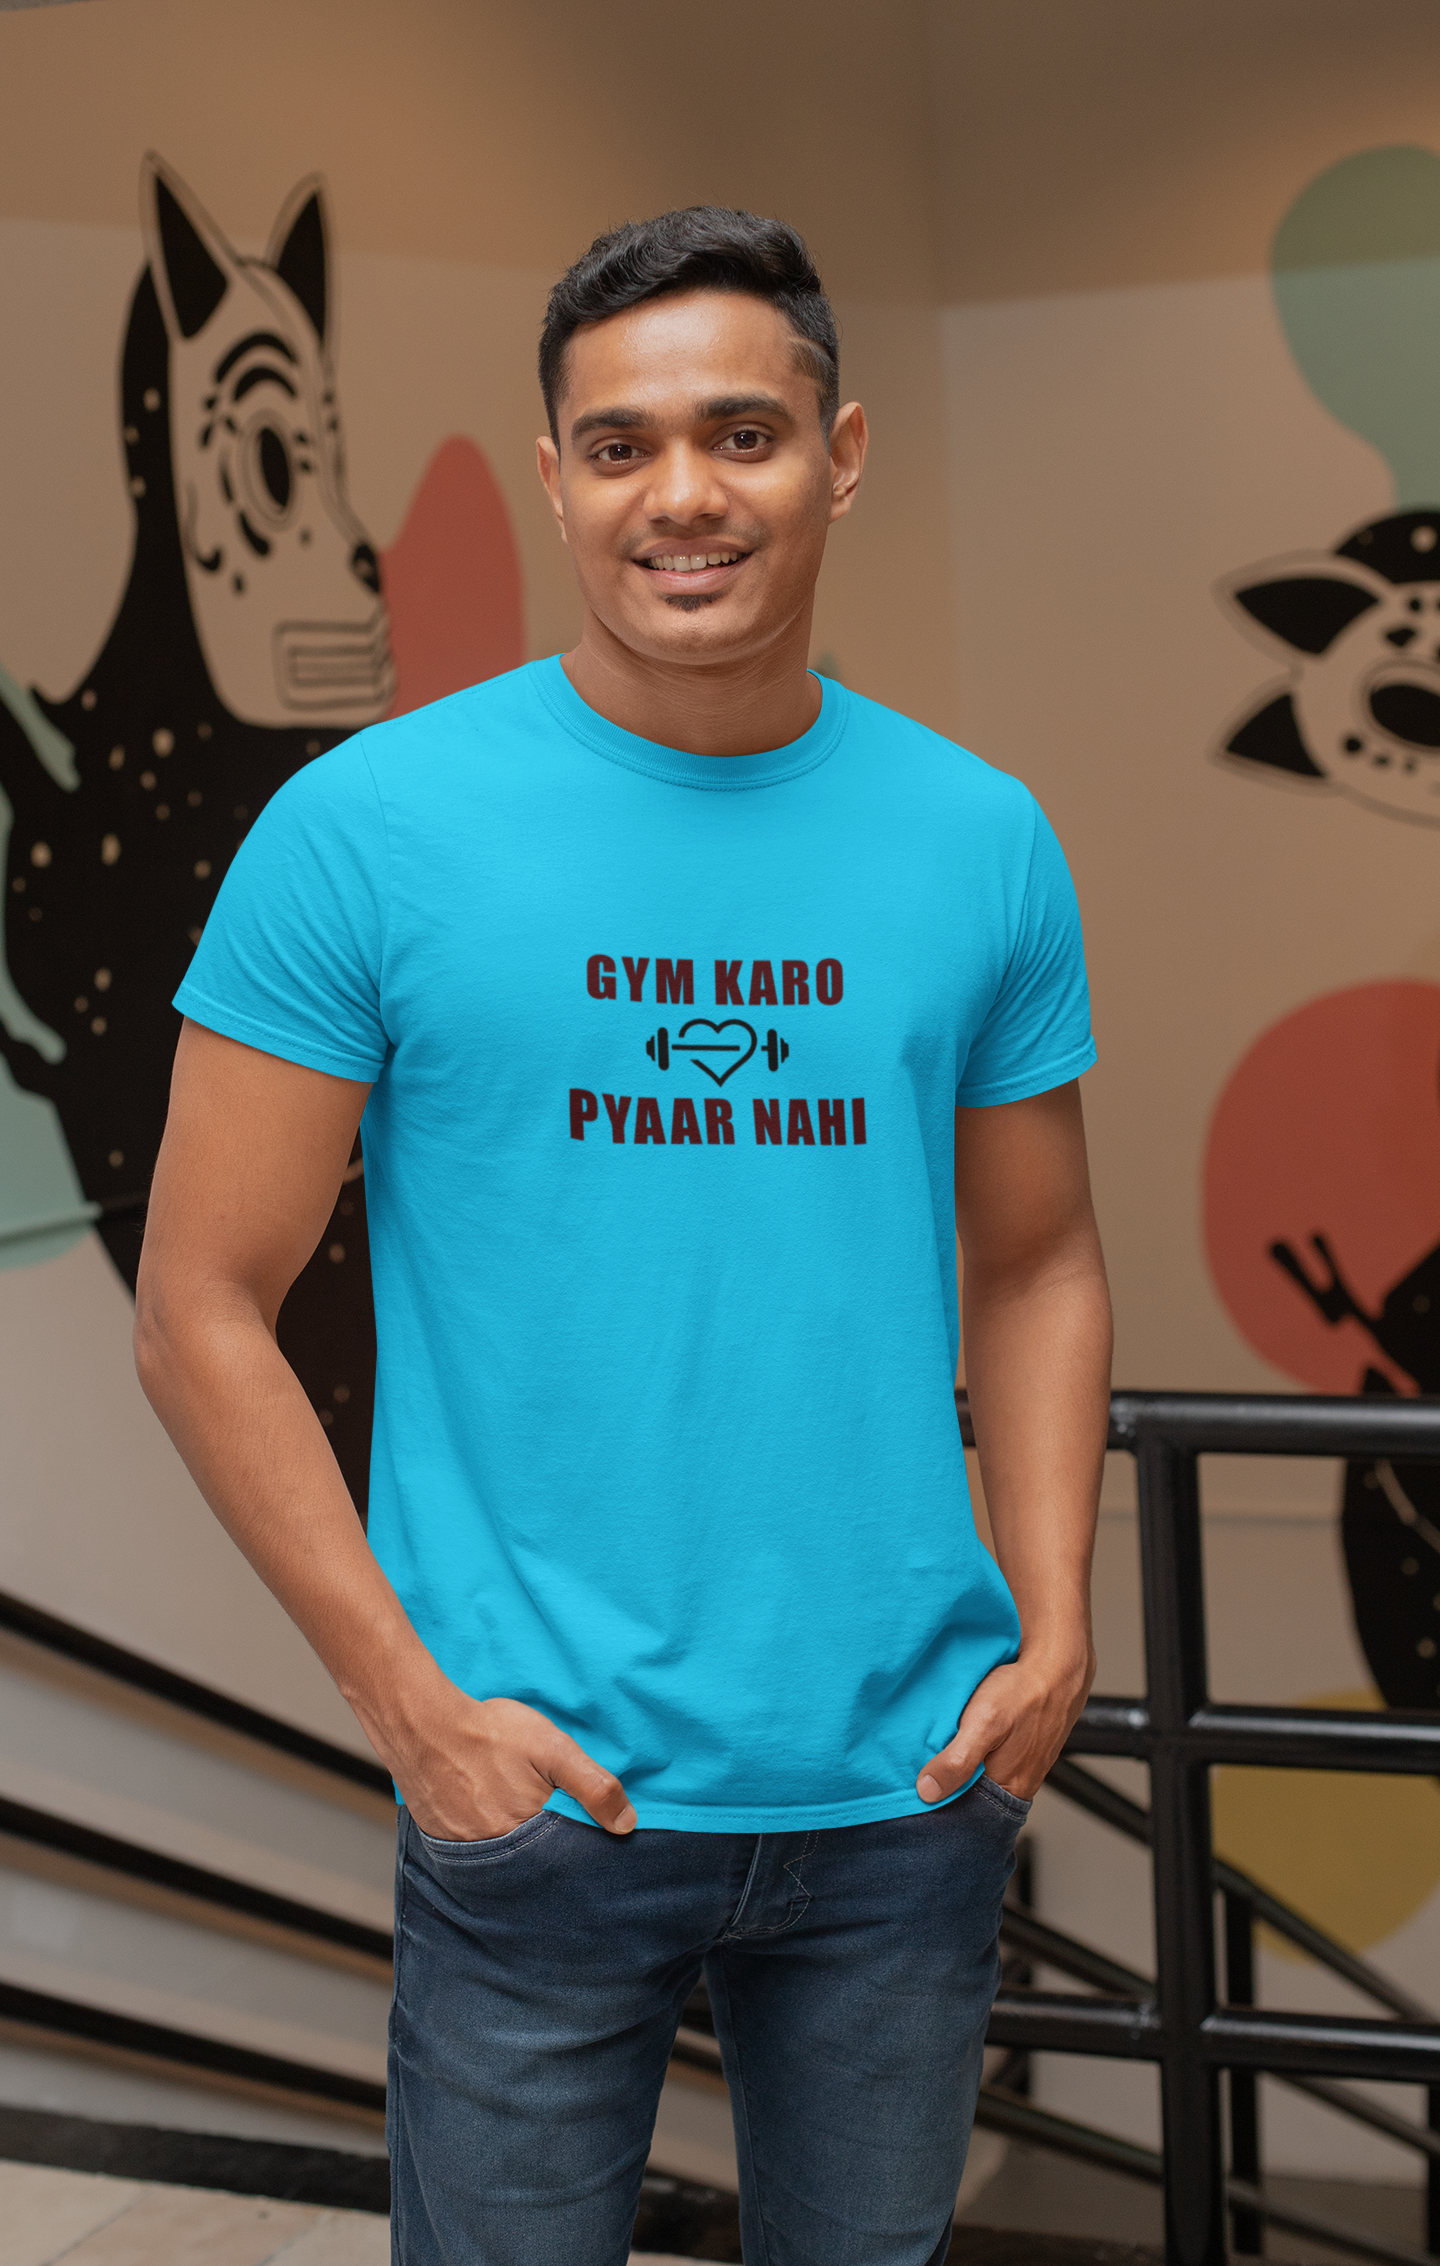 GYM KARO PYAR NAHI Workout T-shirt.